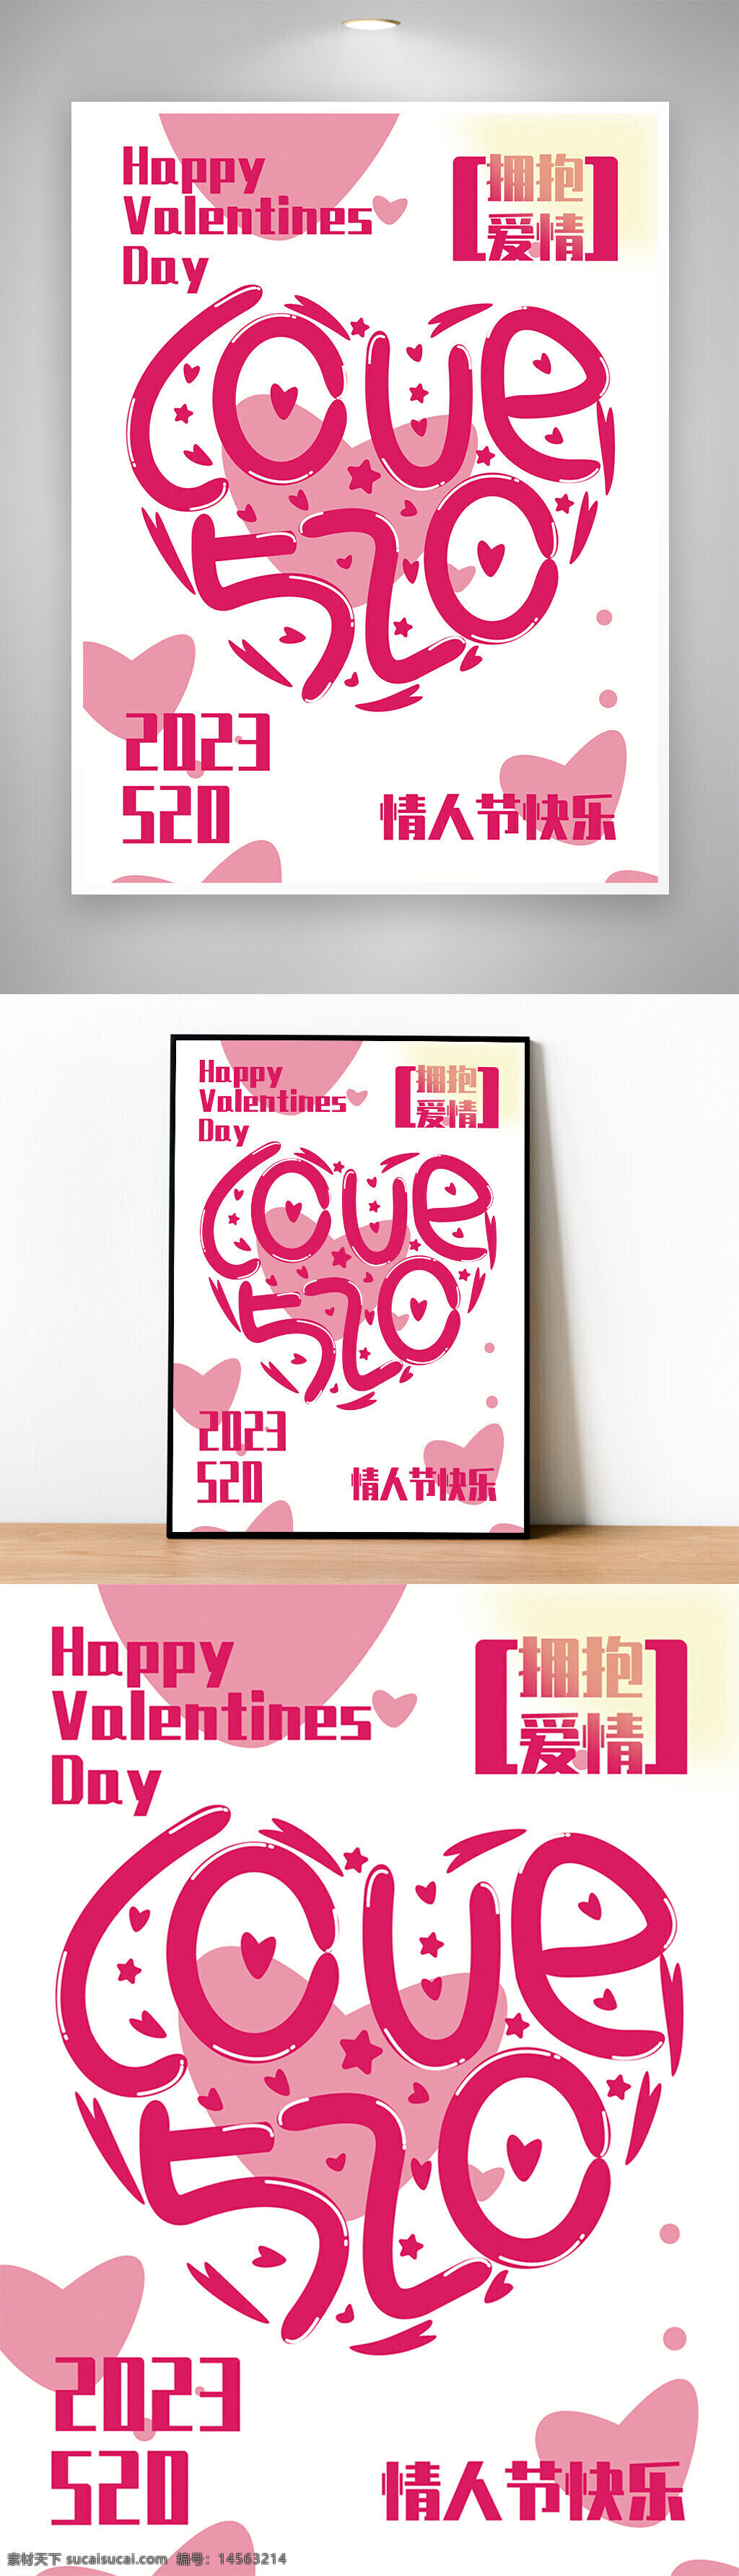 520 粉色 可爱 love 艺术 矢量 海报